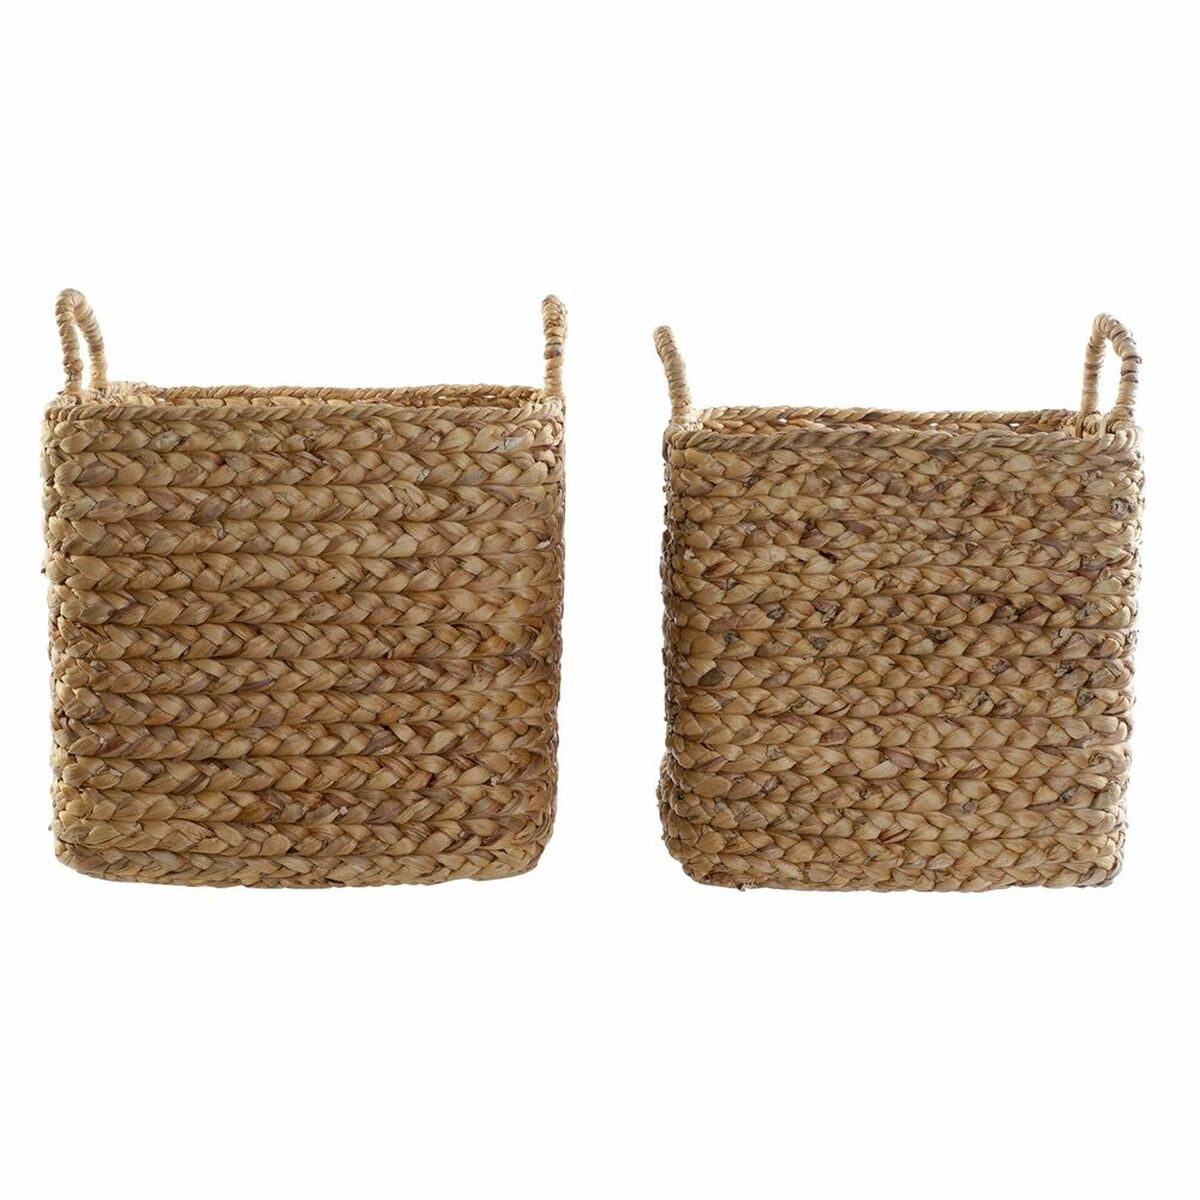 Basket set Boho (38 x 38 x 36 cm) (42 x 42 x 39 cm) (2 pcs)